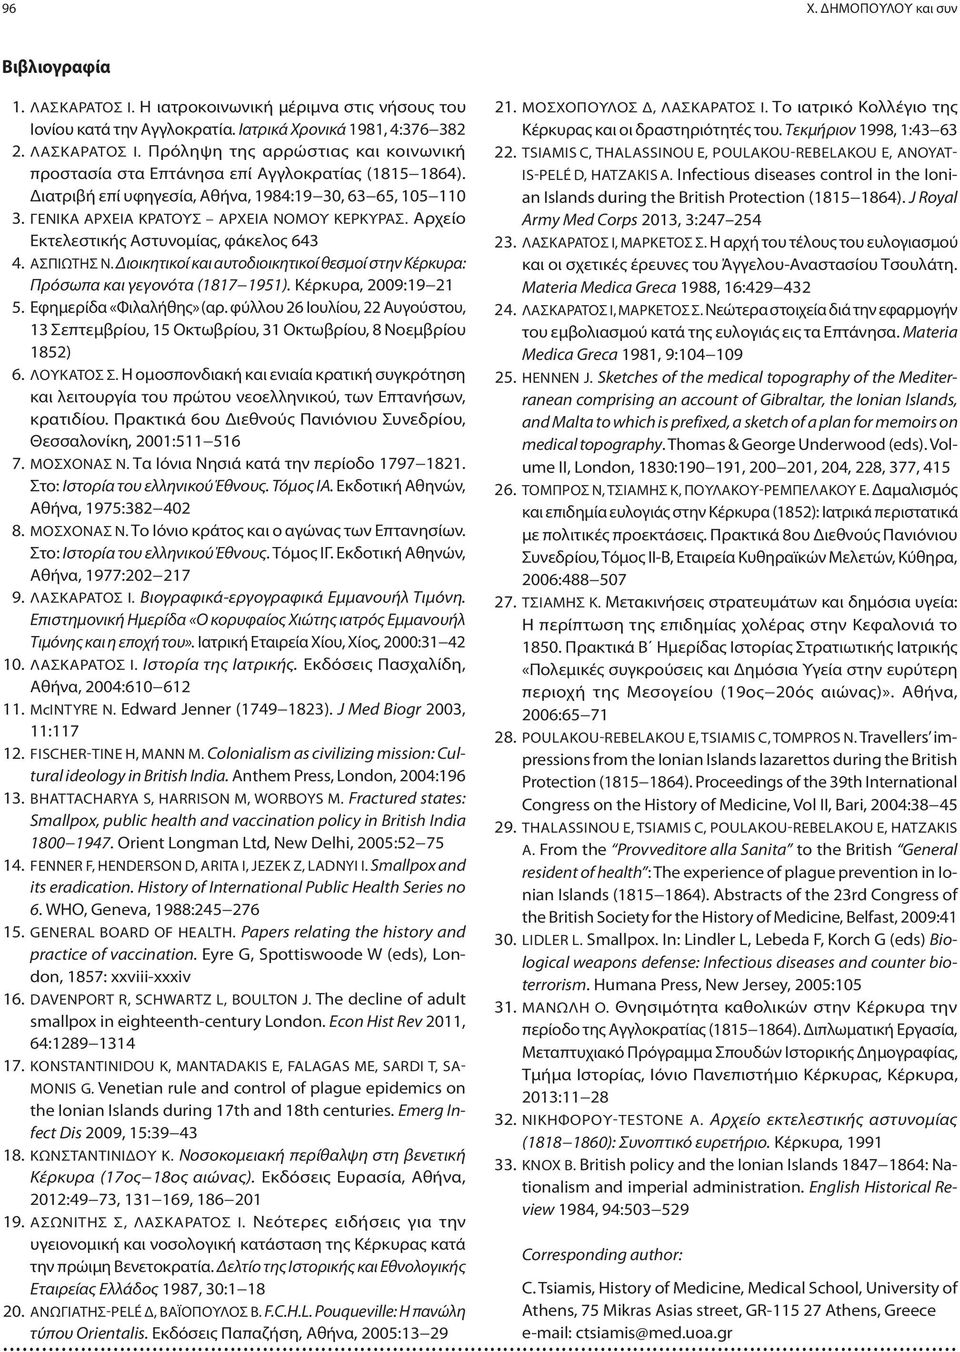 Διοικητικοί και αυτοδιοικητικοί θεσμοί στην Κέρκυρα: Πρόσωπα και γεγονότα (1817 1951). Κέρκυρα, 2009:19 21 5. Εφημερίδα «Φιλαλήθης» (αρ.